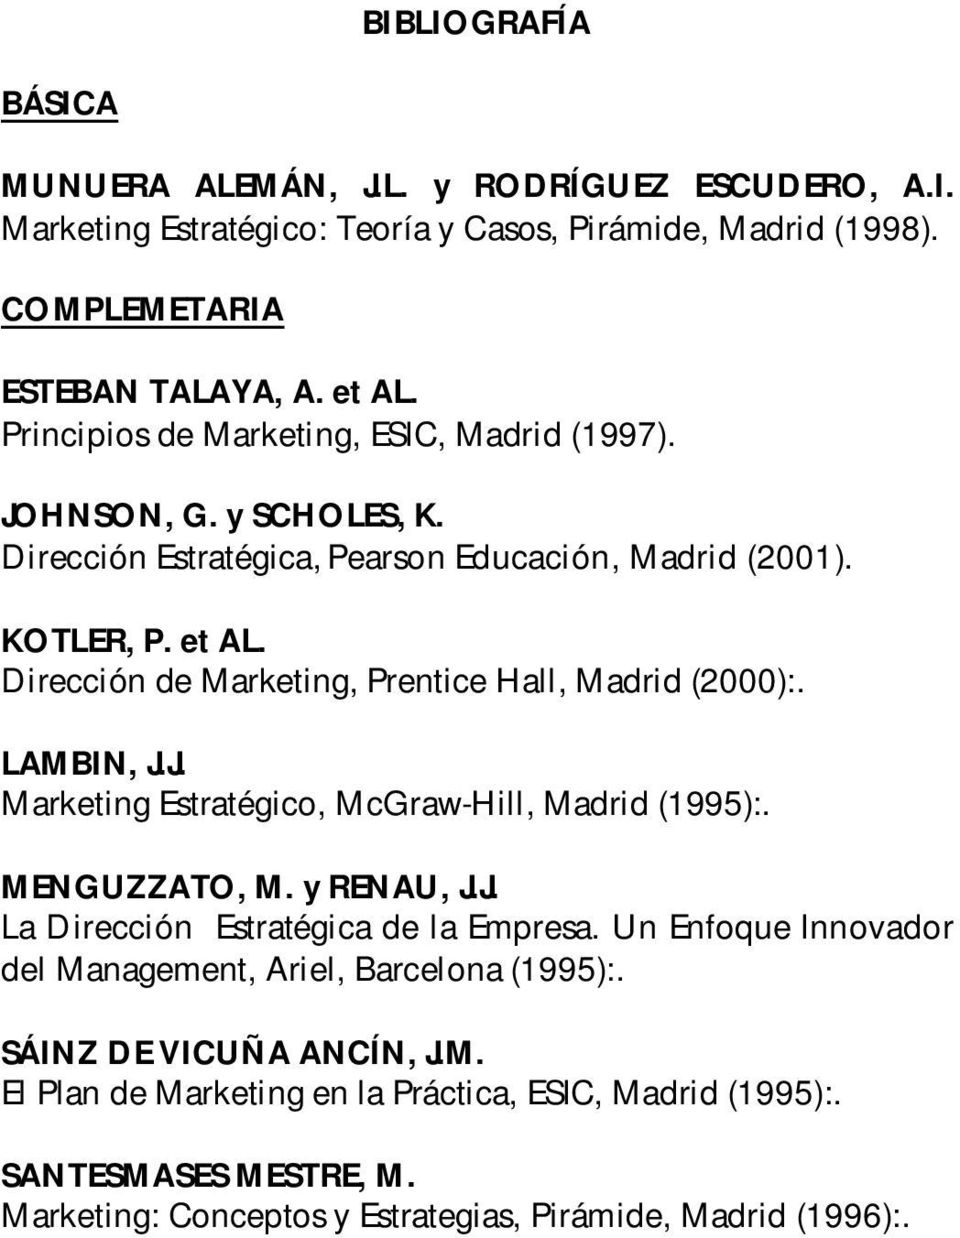 Dirección de Marketing, Prentice Hall, Madrid (2000):. LAMBIN, J.J. Marketing Estratégico, McGraw-Hill, Madrid (1995):. MENGUZZATO, M. y RENAU, J.J. La Dirección Estratégica de la Empresa.